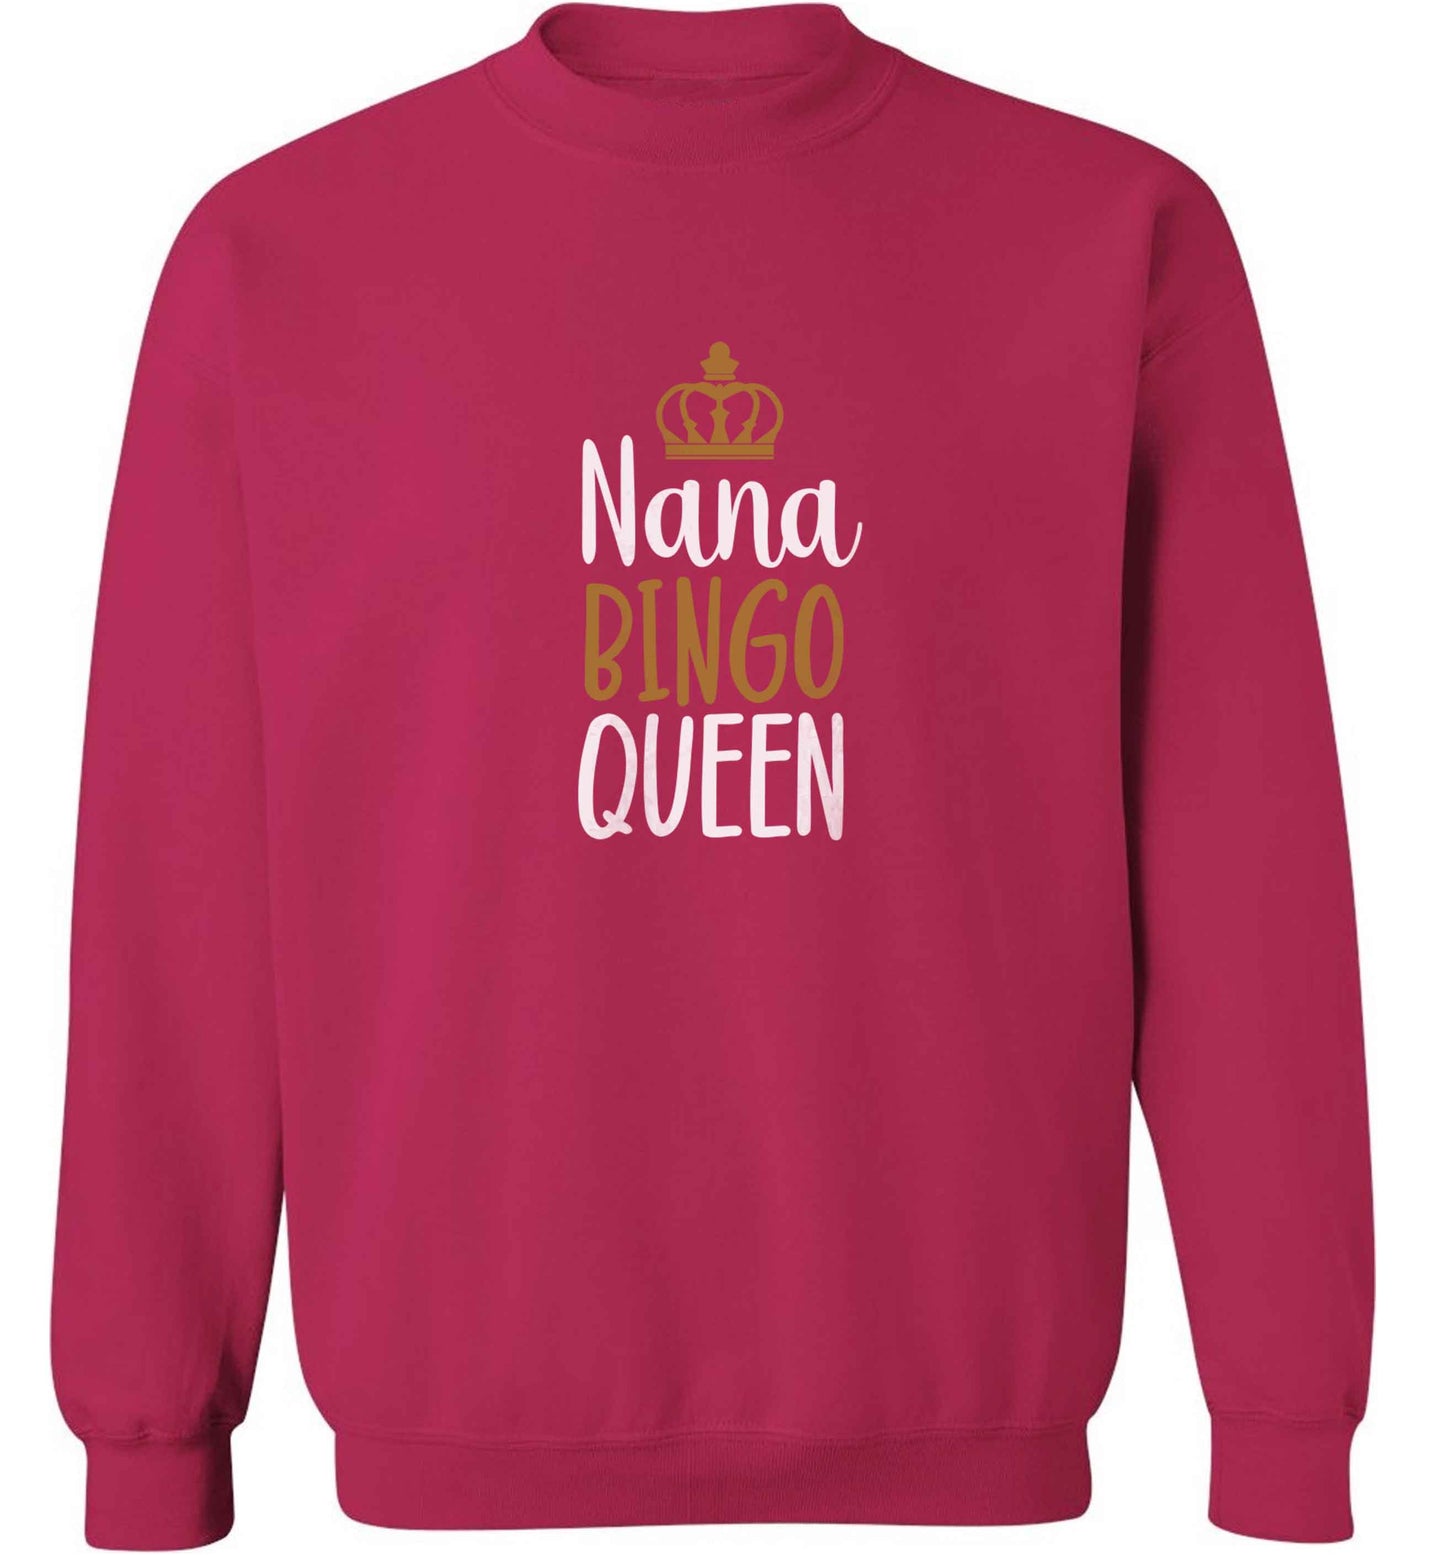 Personalised bingo queen adult's unisex pink sweater 2XL